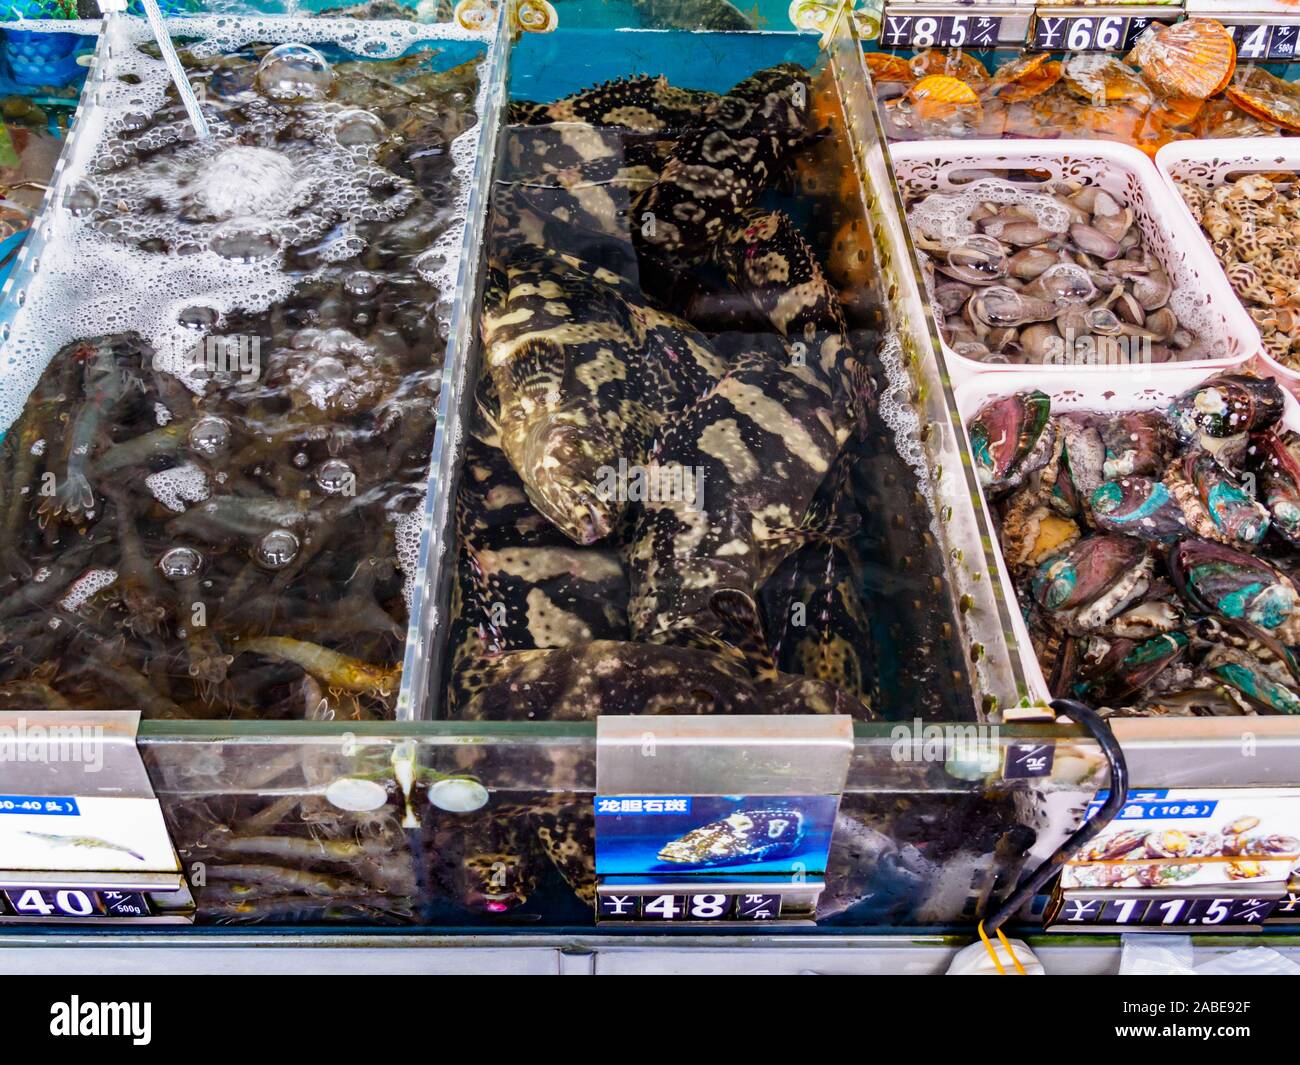 HAINAN, CHINA - 3 Mar 2019 - Tanks mit frischem Leben Fisch (Fisch, Krabben, Schalentiere) für den Verkauf zu einem Fisch Groß- und Einzelhandel Zentrum in Hainan, China Stockfoto